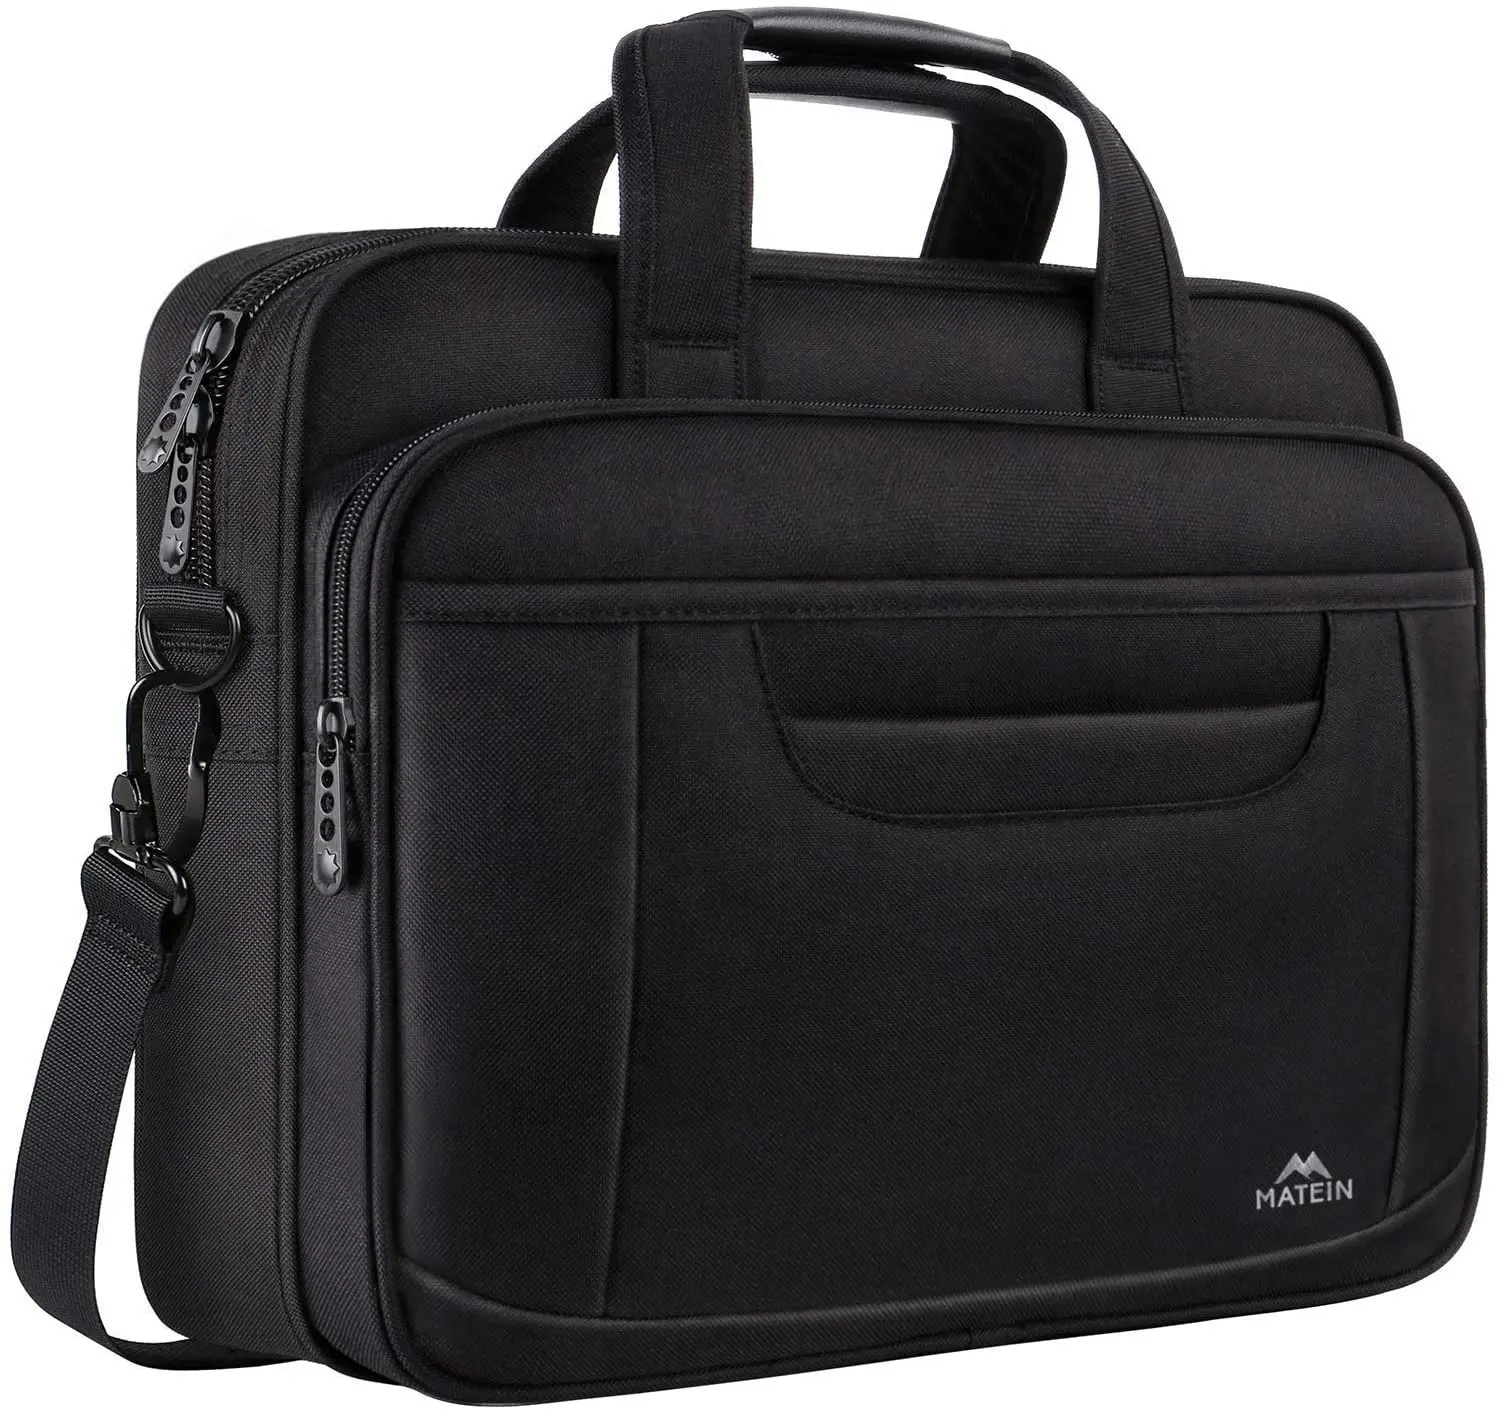 Best amazon attache-maletín azul de alta gama para hombre, marcas de equipaje, funda para ordenador gq, definición de maletín